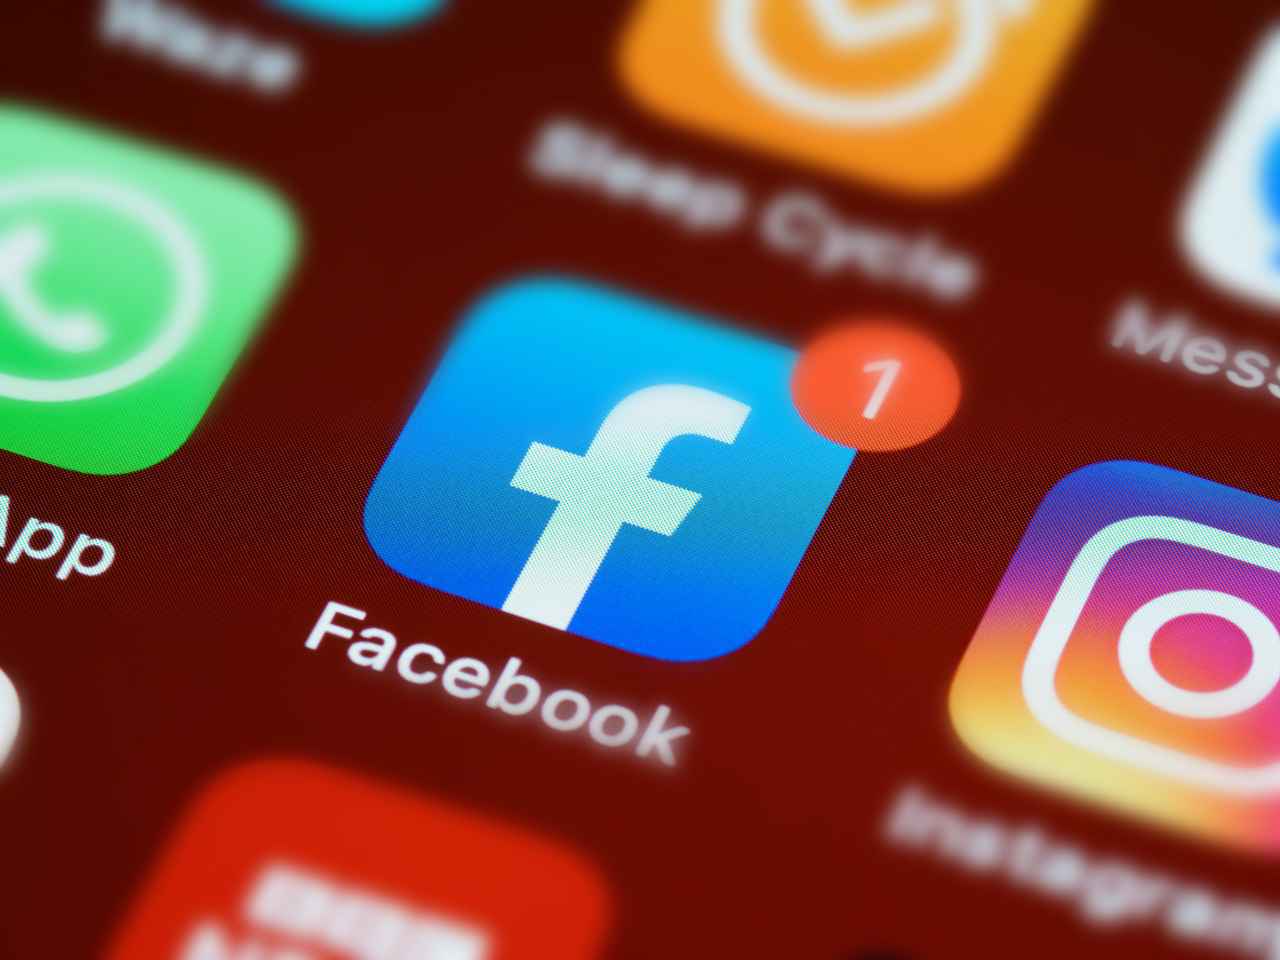 Chamou a atenção do pesquisador o fato de não haver um plano de contenção para evitar que problemas internos do Facebook causem danos globais